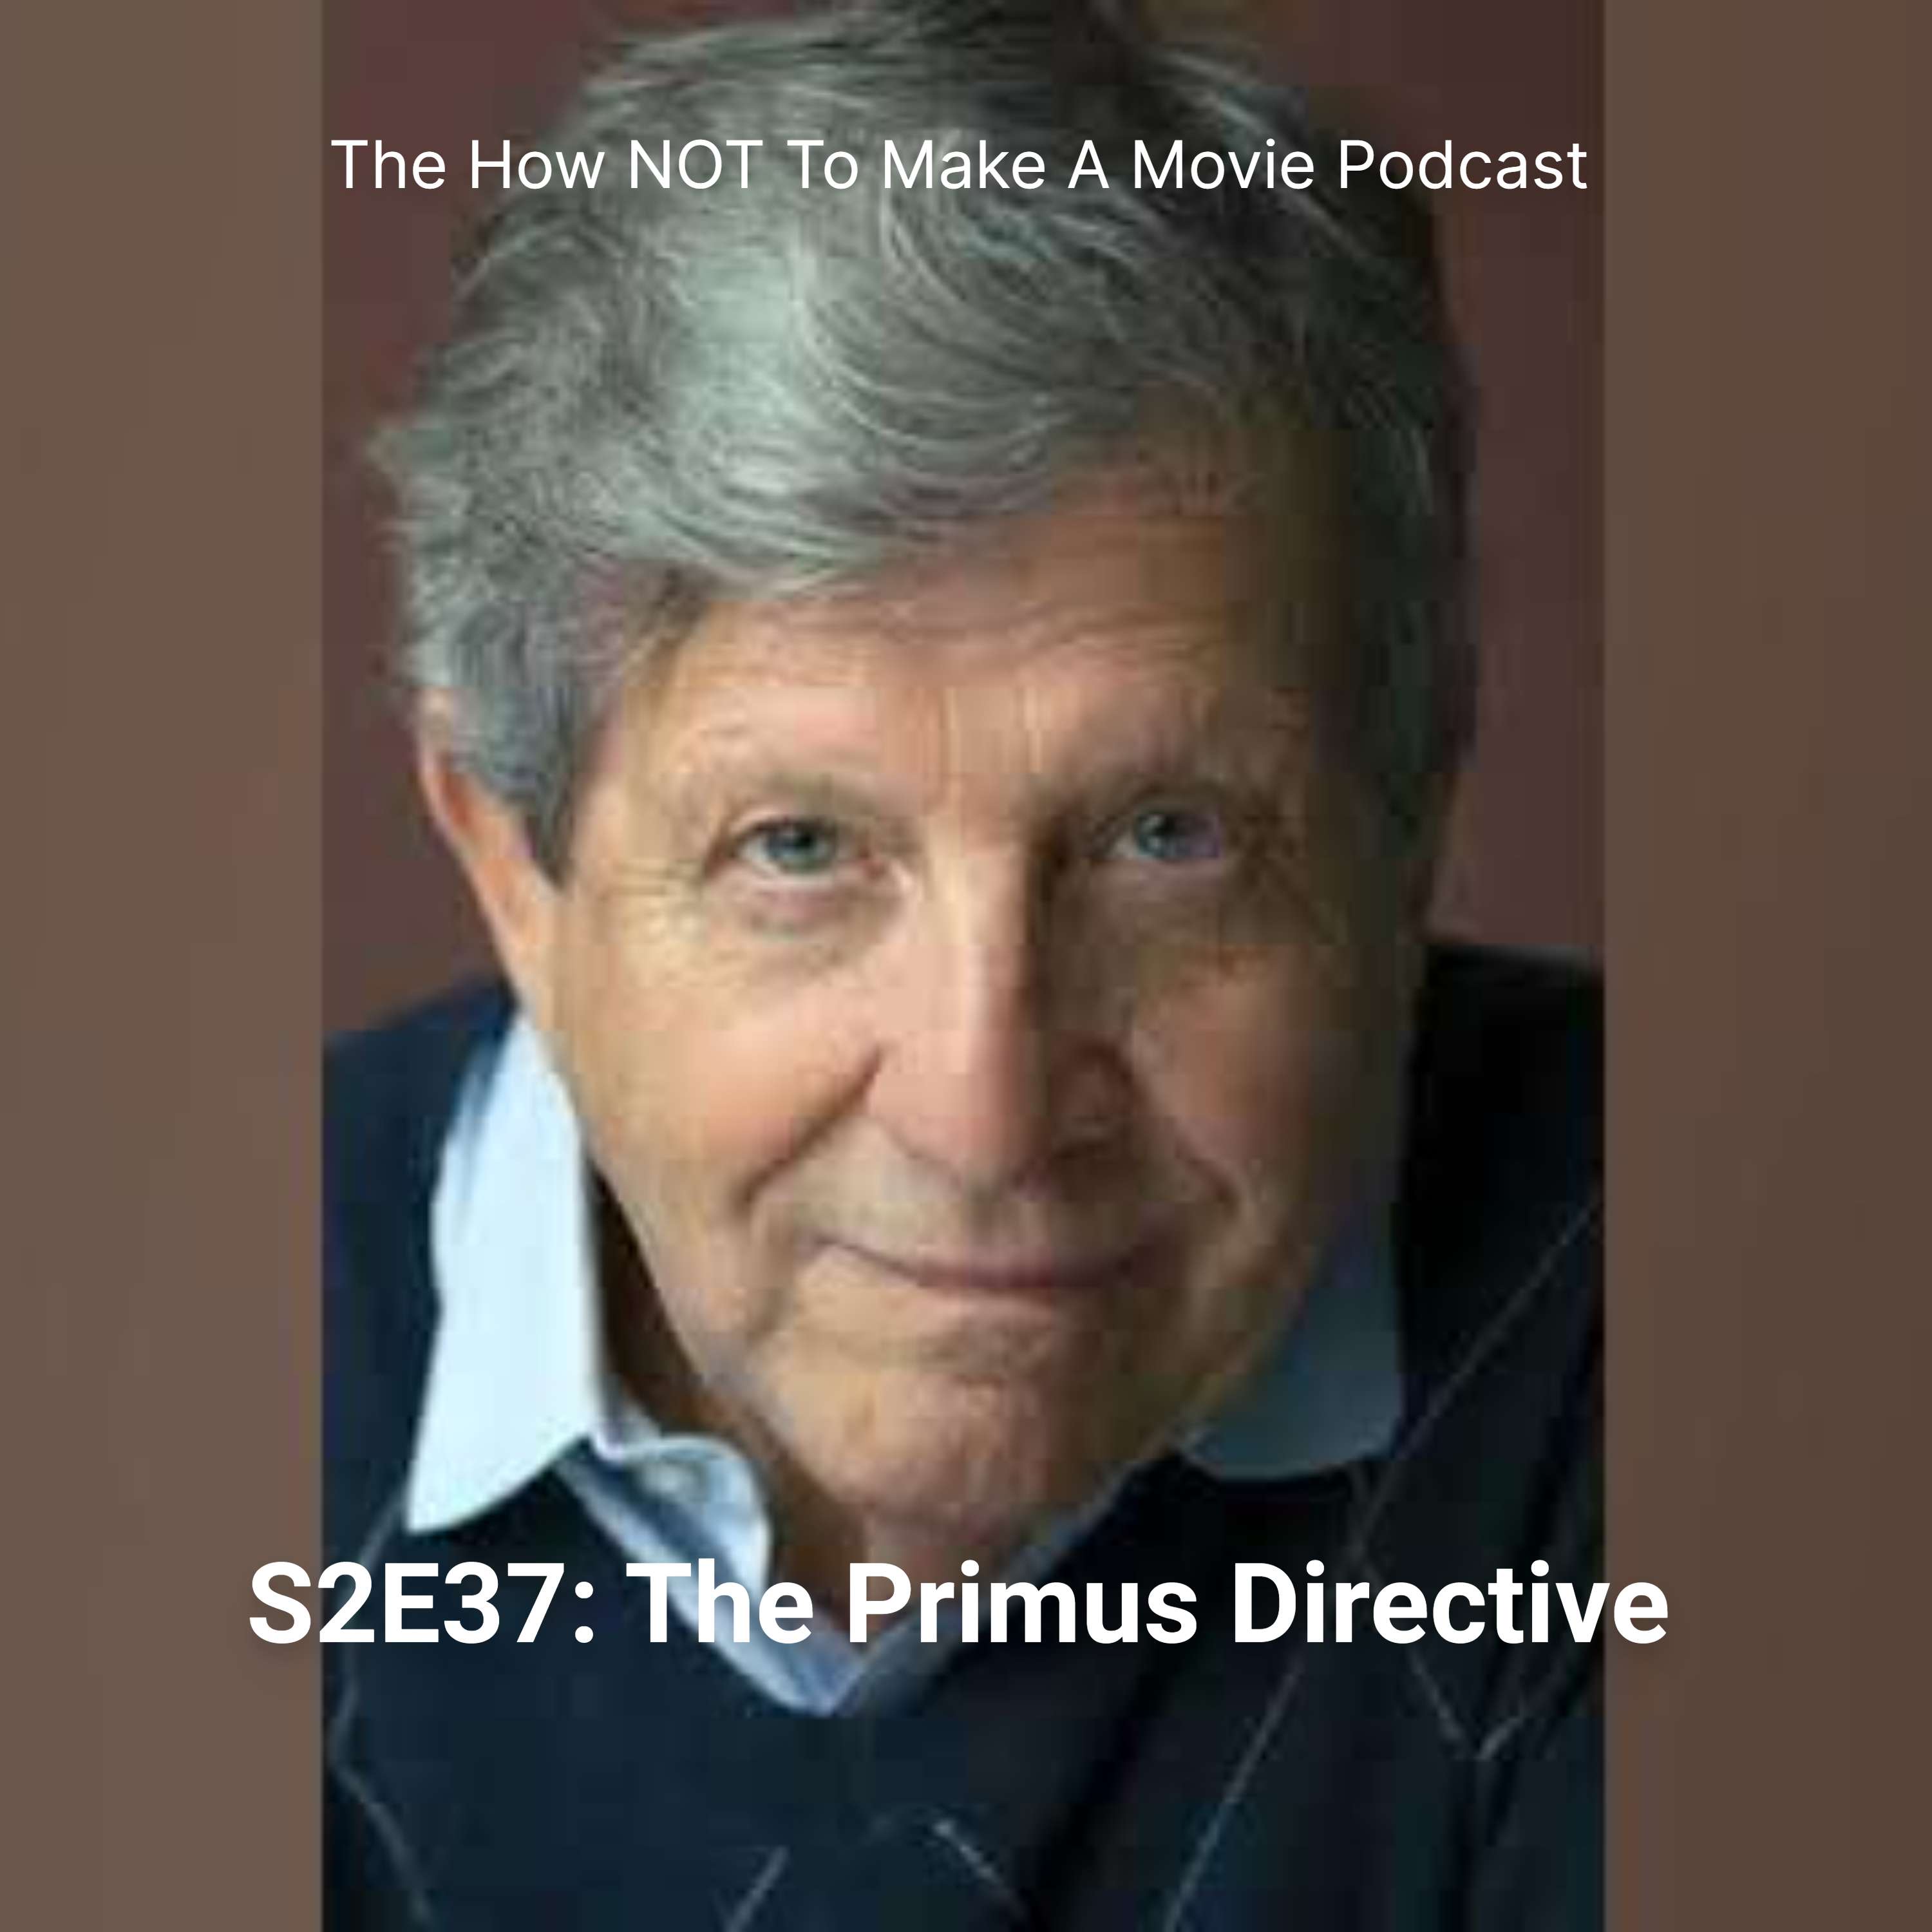 S2E37: The Primus Directive